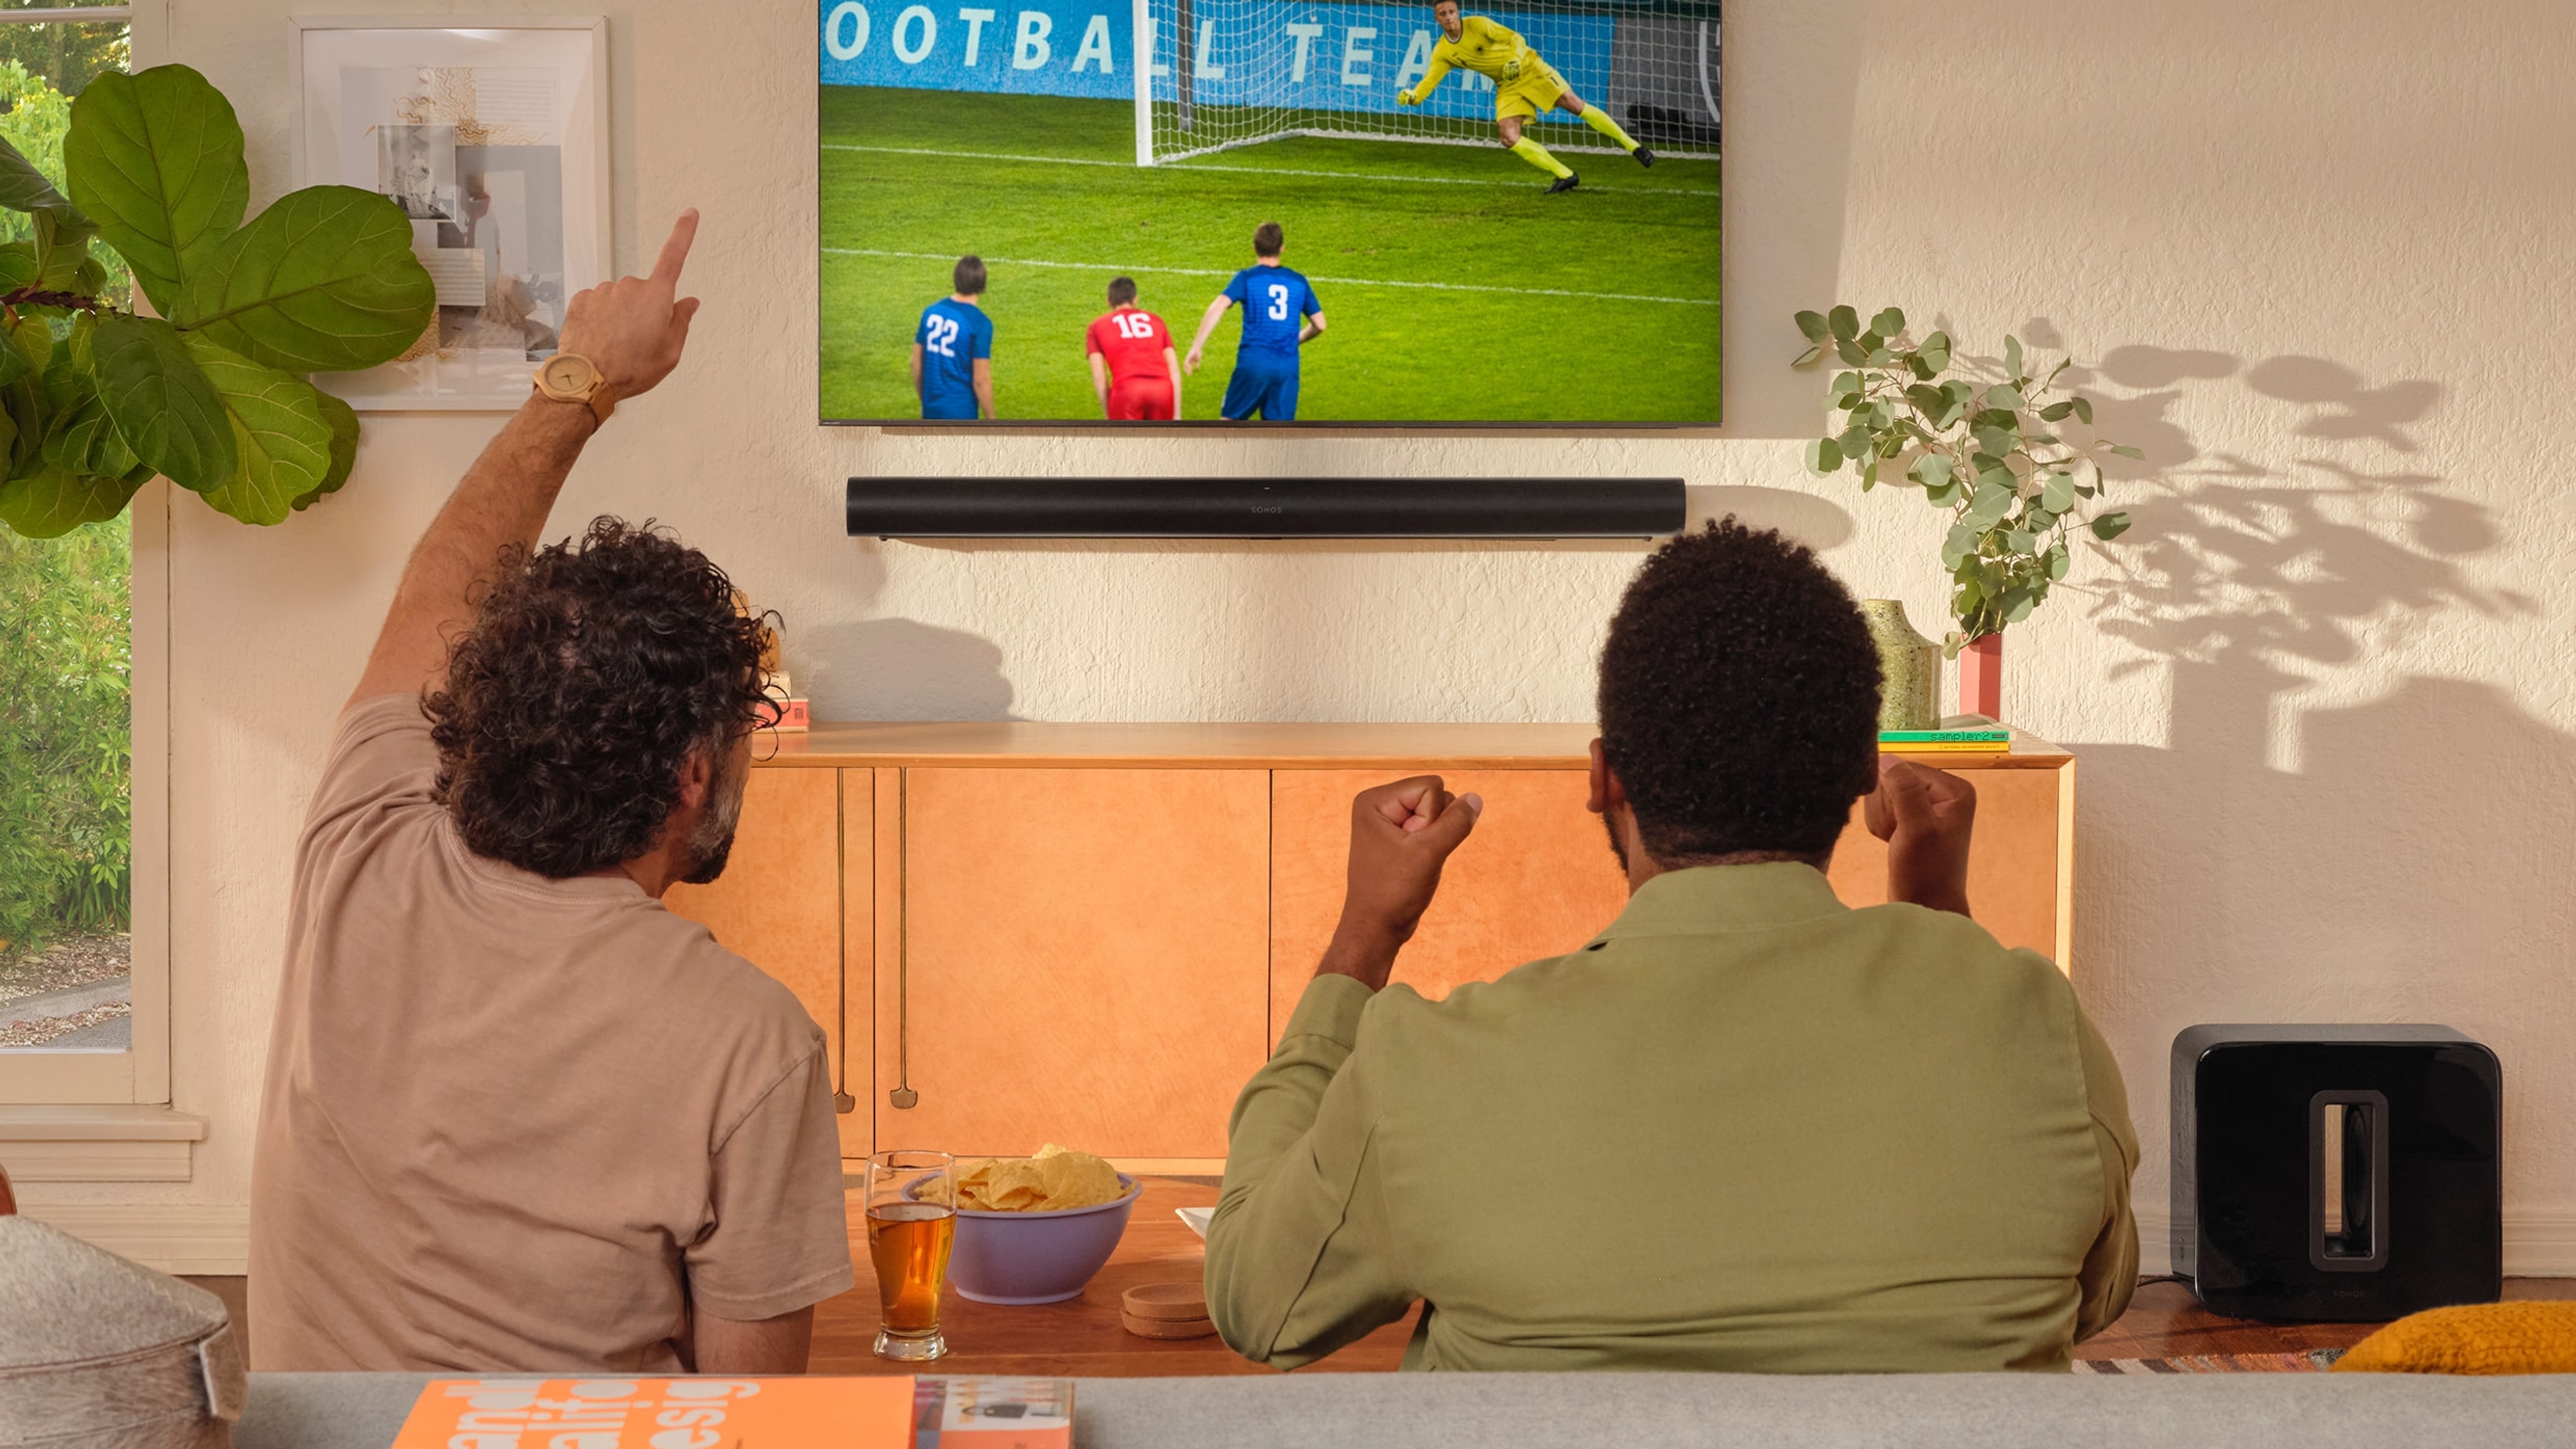 Zwei Personen, die sich auf einem Fernseher mit einer Arc in Schwarz und einem Sub Fußball ansehen